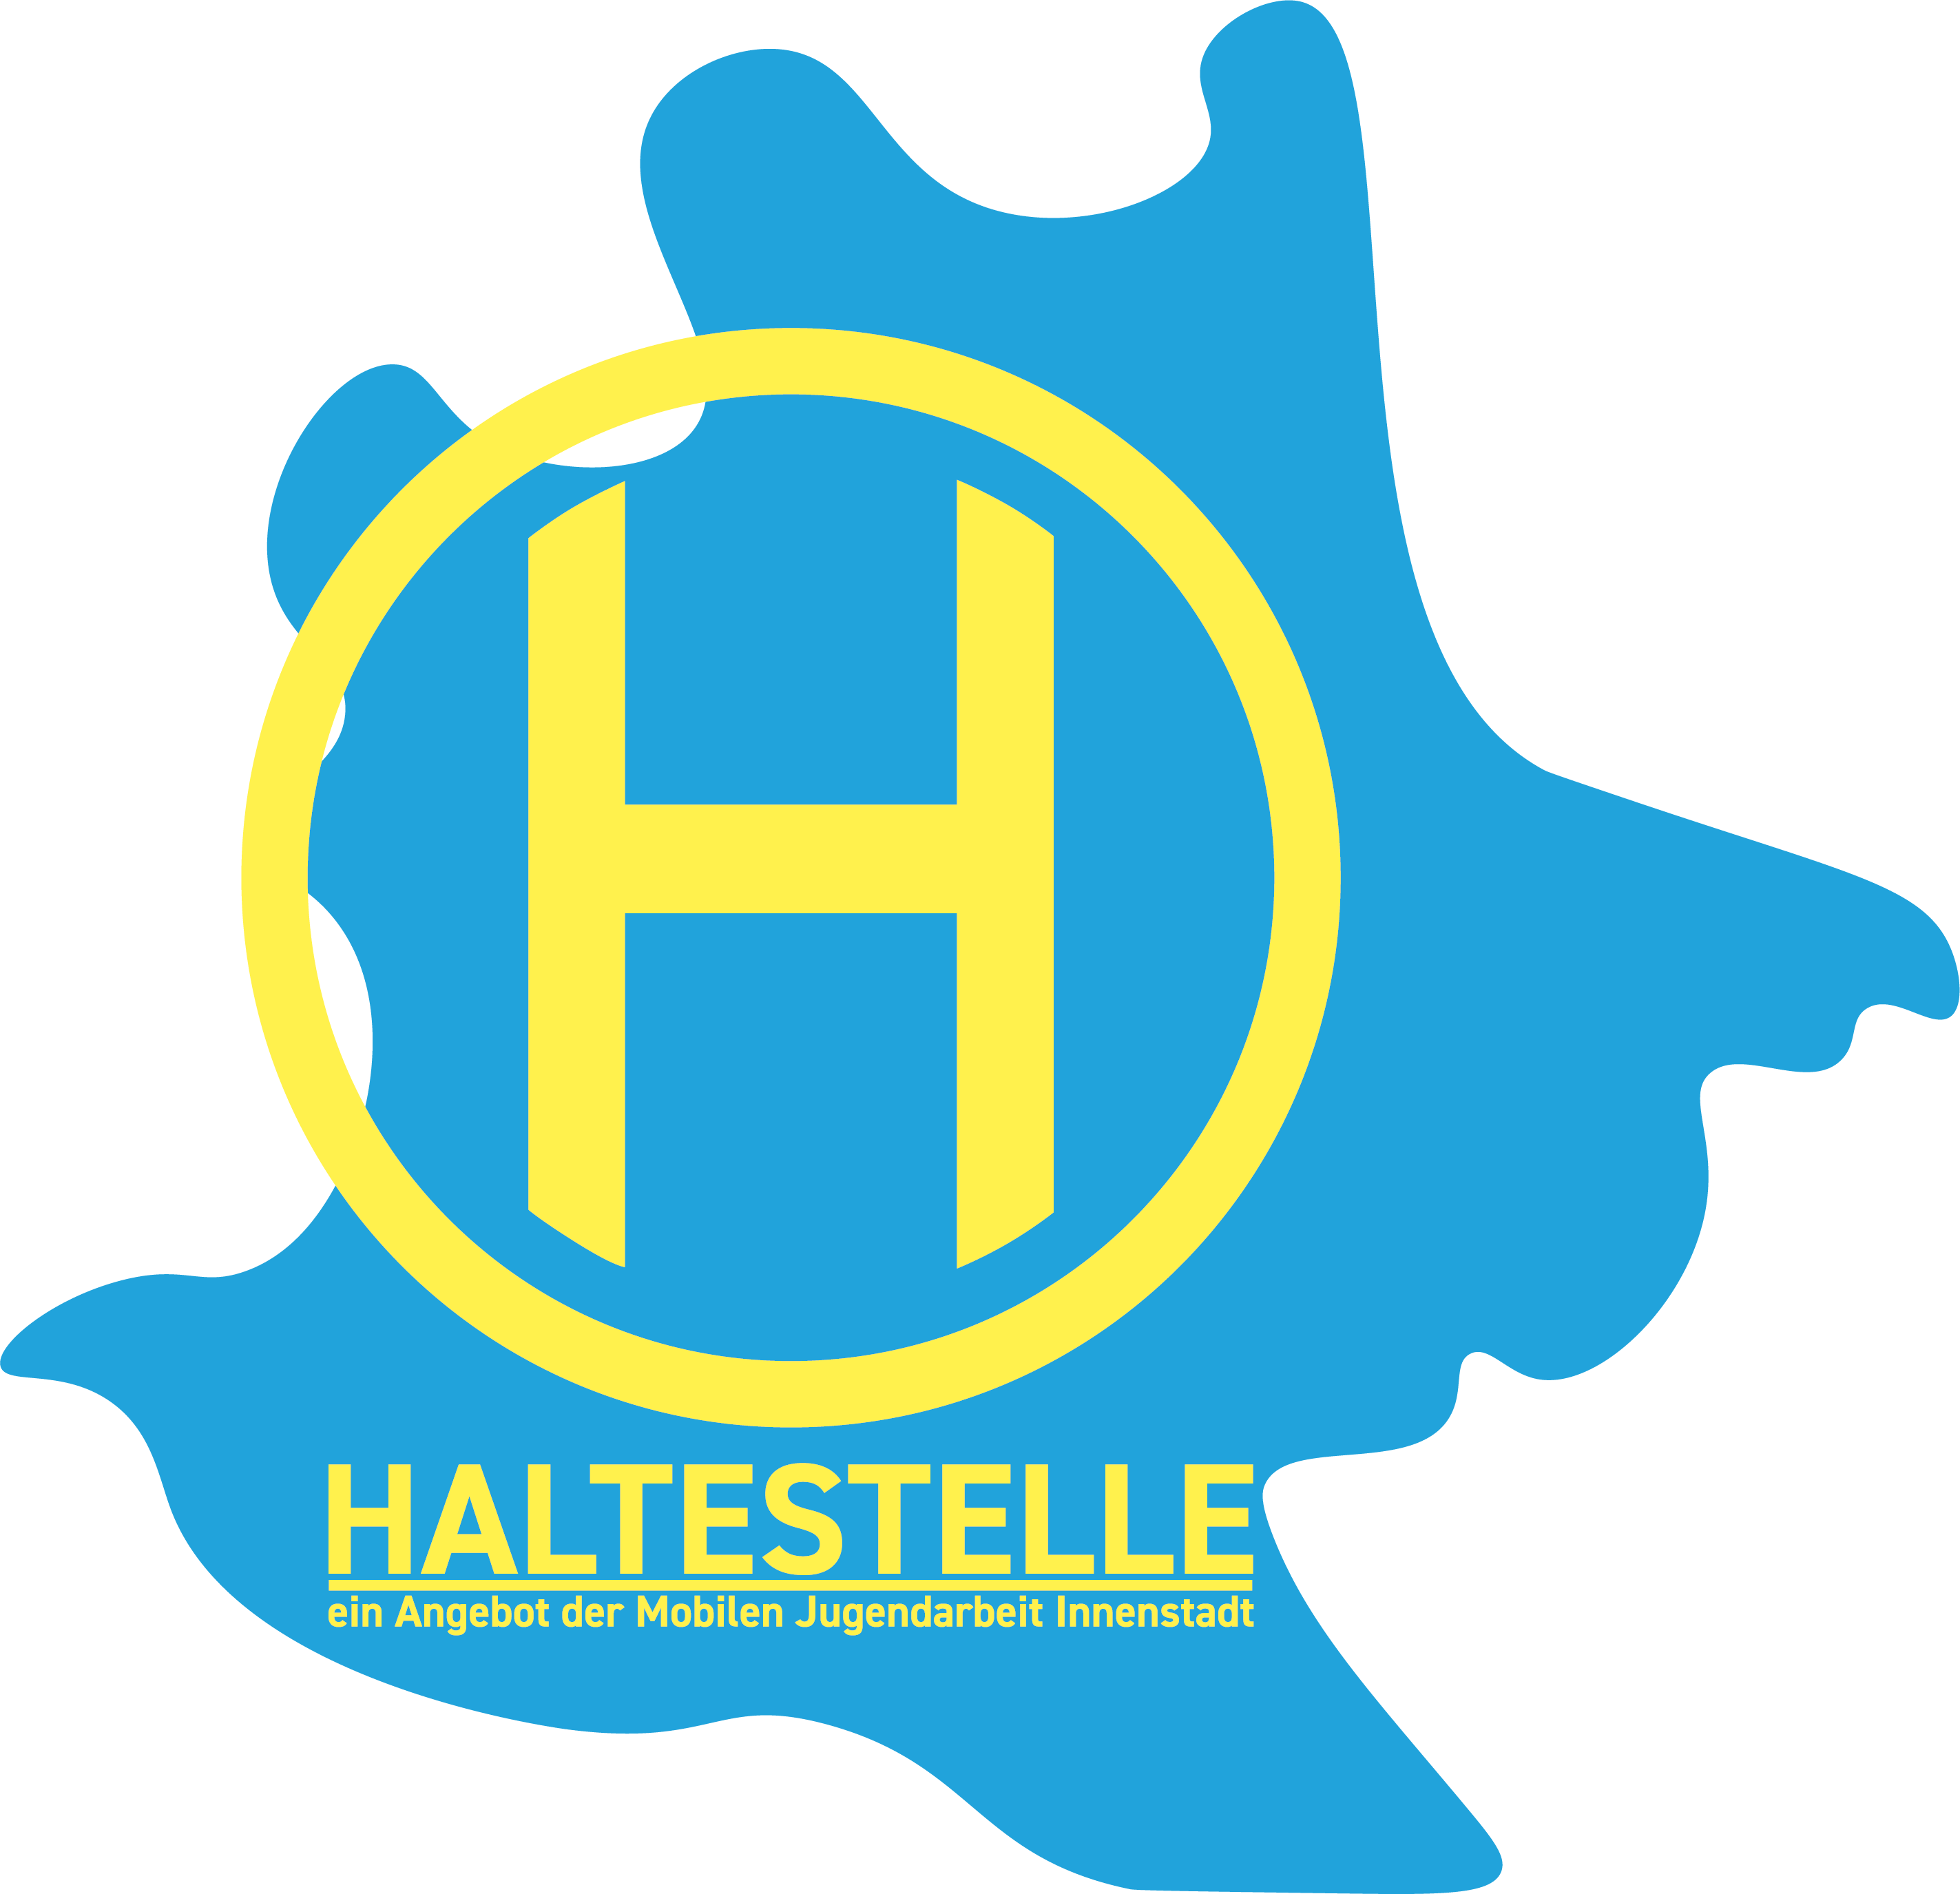 Das Logo der HALTESTELLE ist ein H in einem gelben Kreis.